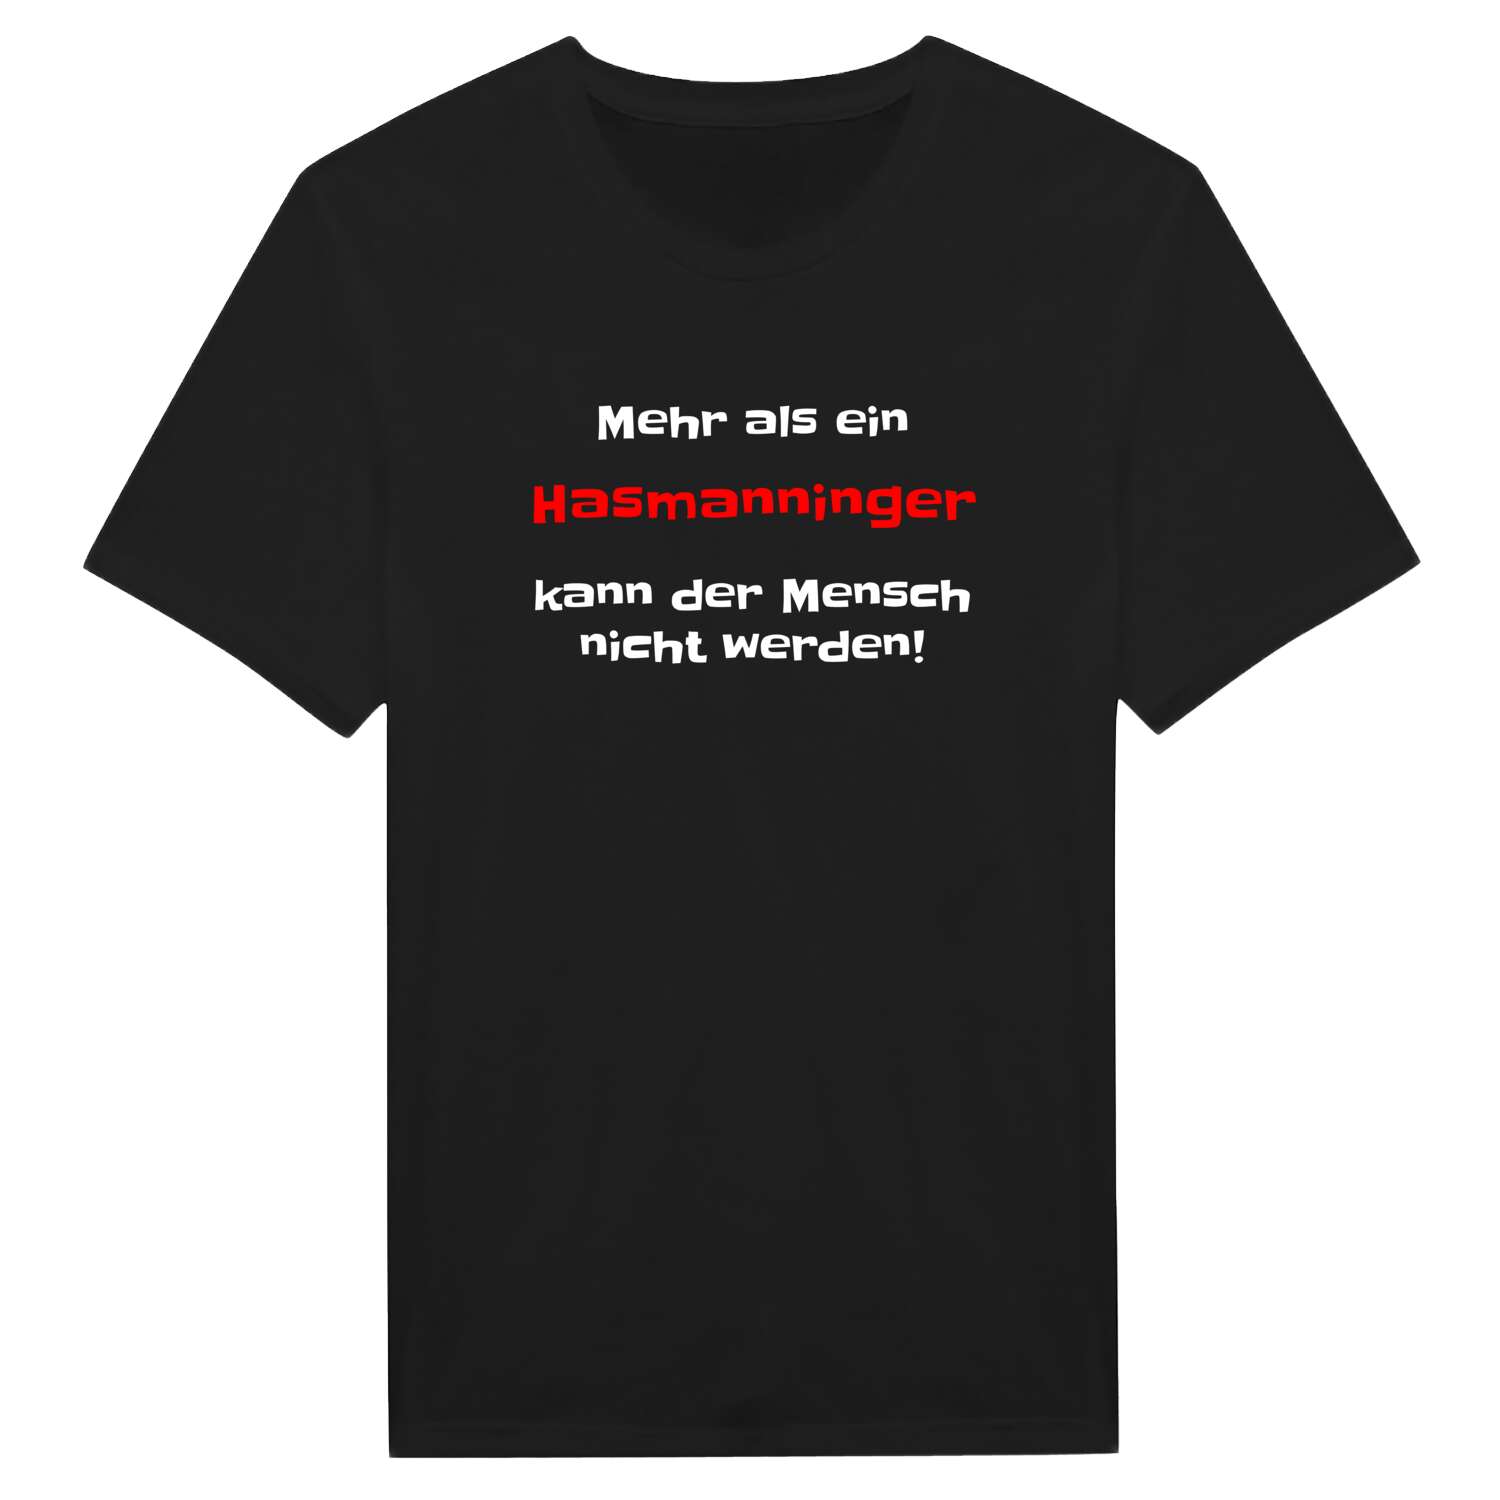 Hasmanning T-Shirt »Mehr als ein«